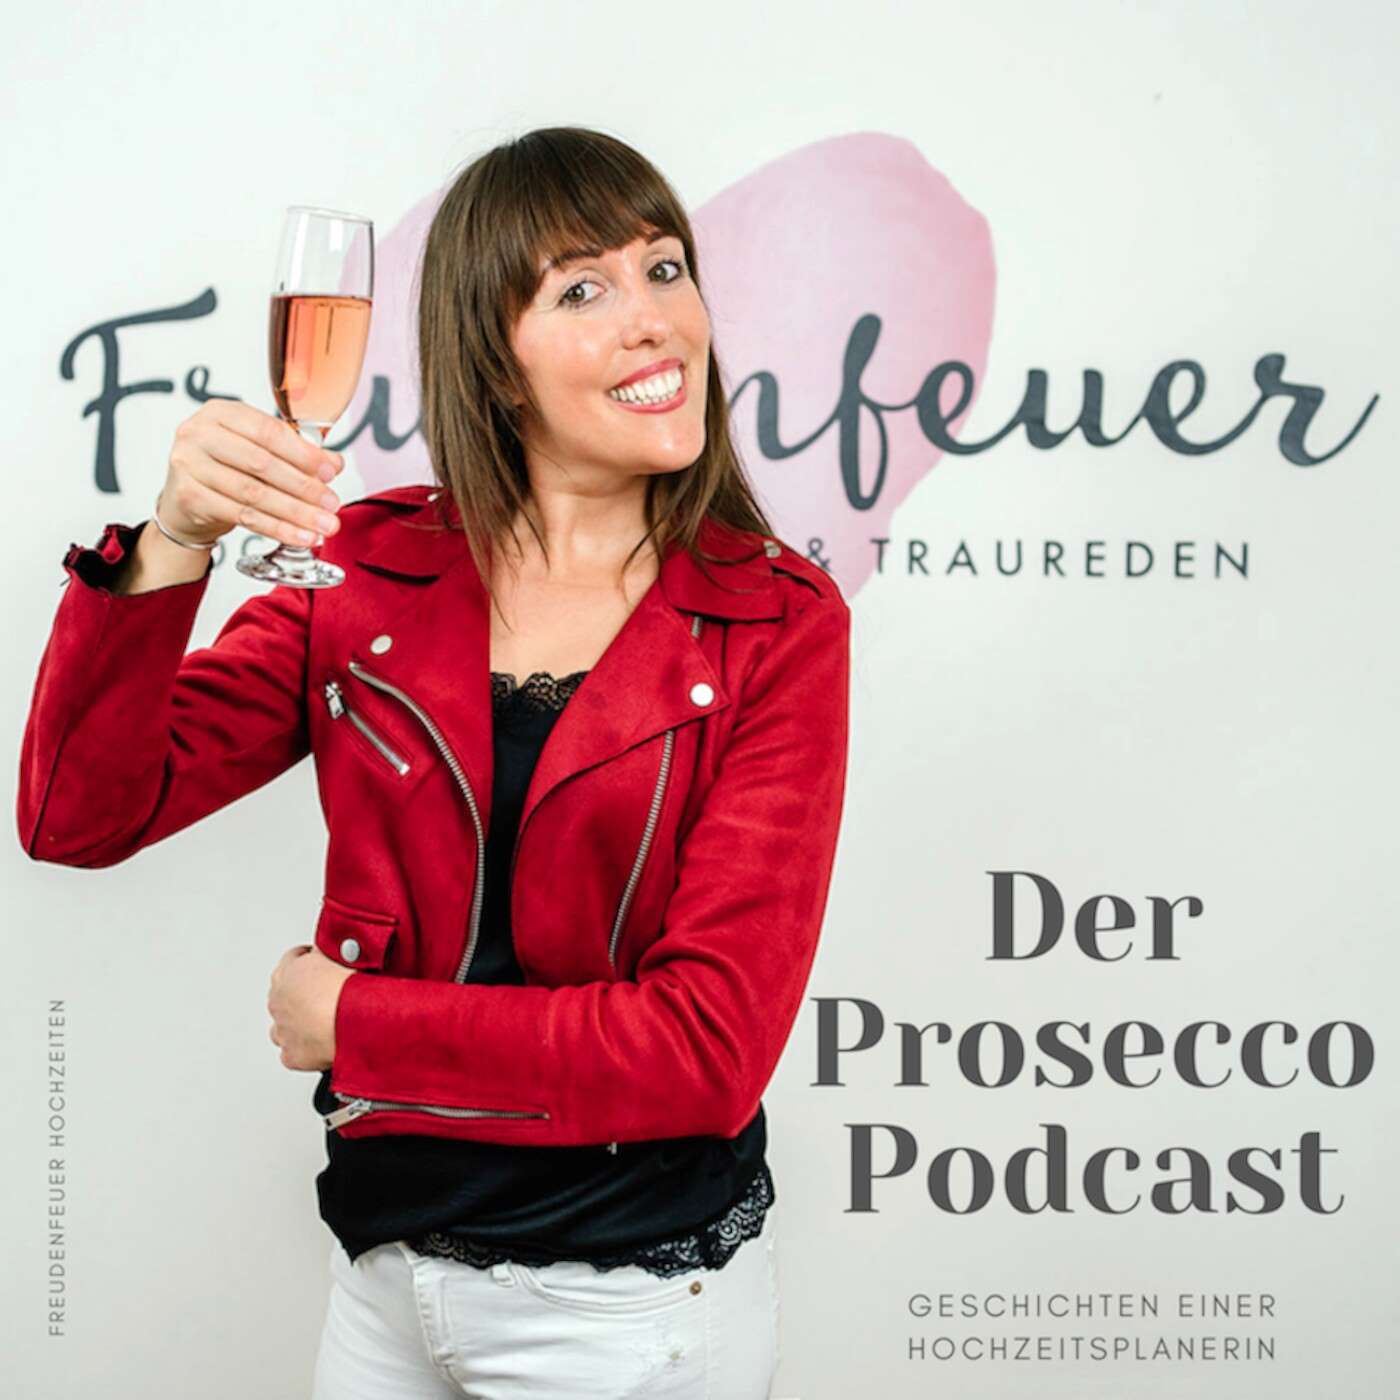 Der Prosecco-Podcast